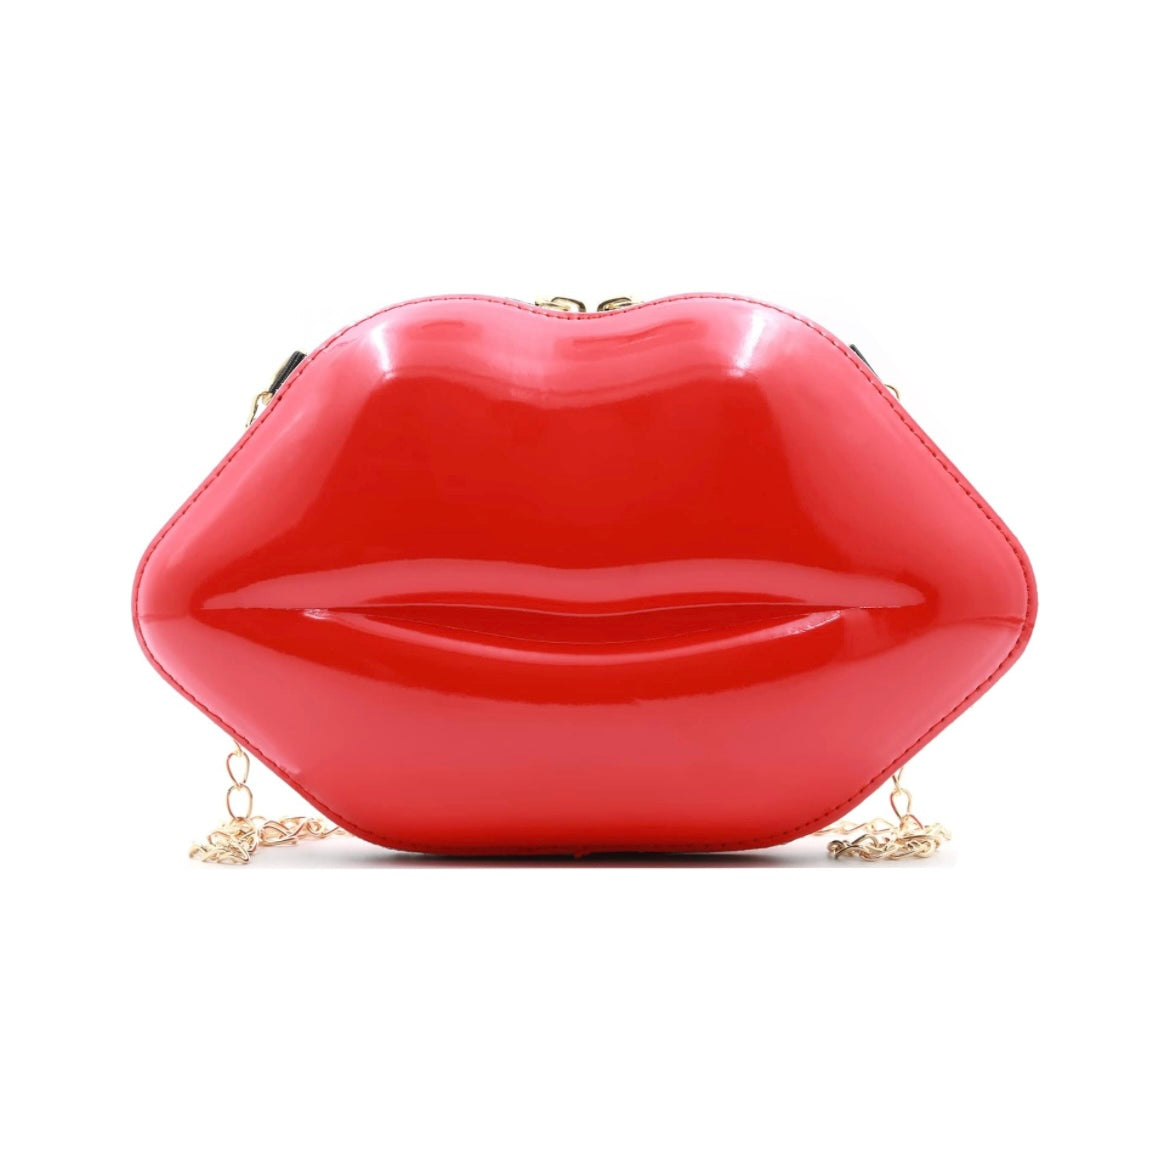 Elegant Lip 💋 Handbag, Evening Bag w/Adjustable Gold Chain shoulder Strap, comes in Several Colors, picture shows red lip hand bag